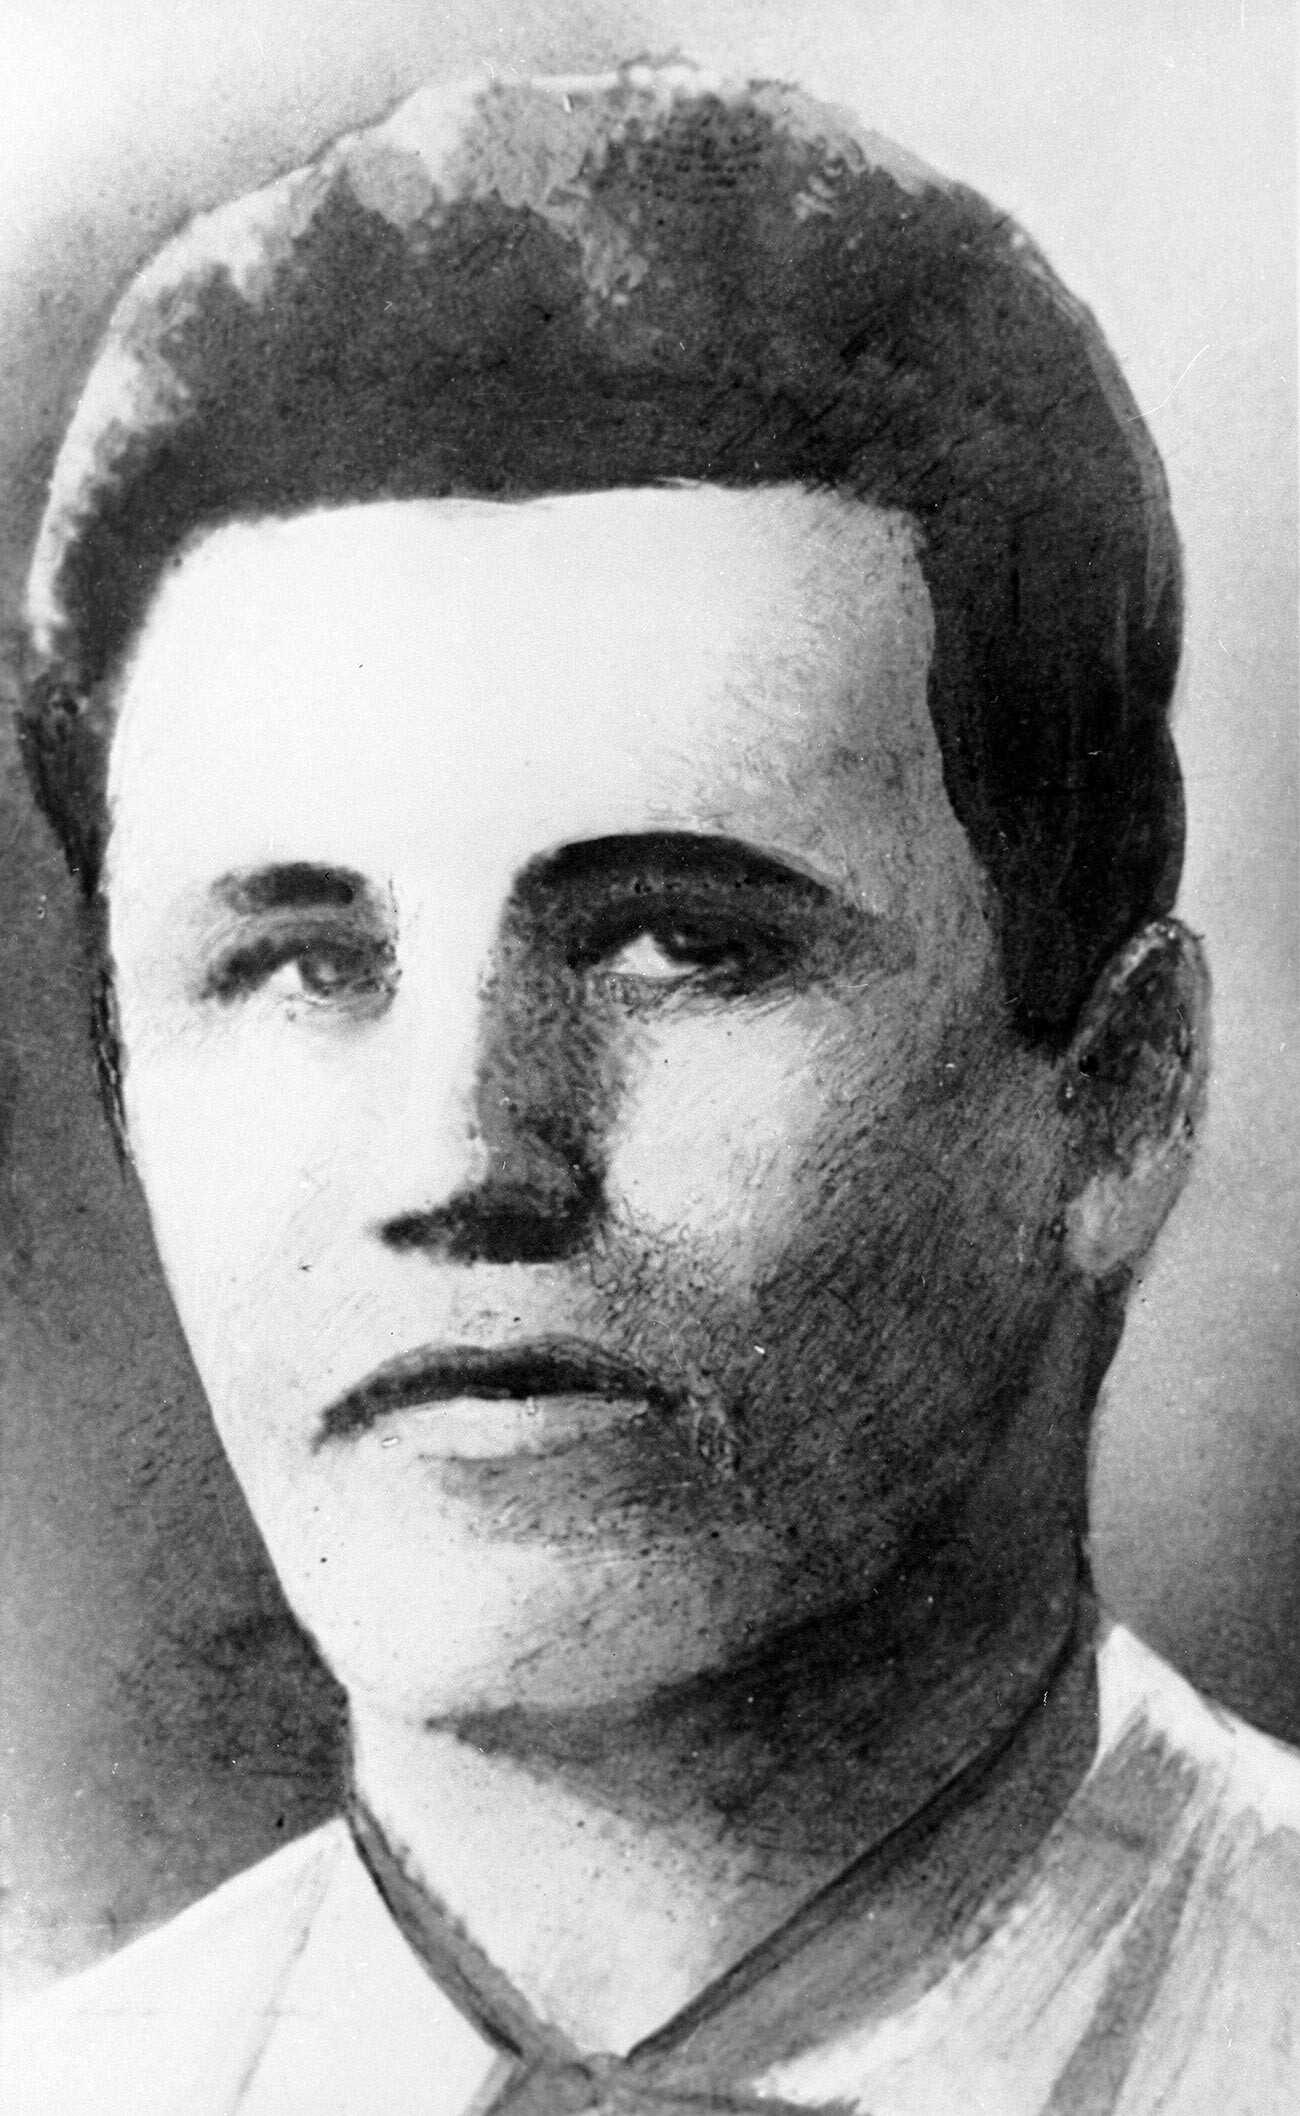 Portret junaka Sovjetske zveze Fjodorja Poletajeva, partizana z vzdevkom Poetan (1909-1945). Vojak sovjetske vojske, aktivni član odporniškega gibanja v Italiji med drugo svetovno vojno 